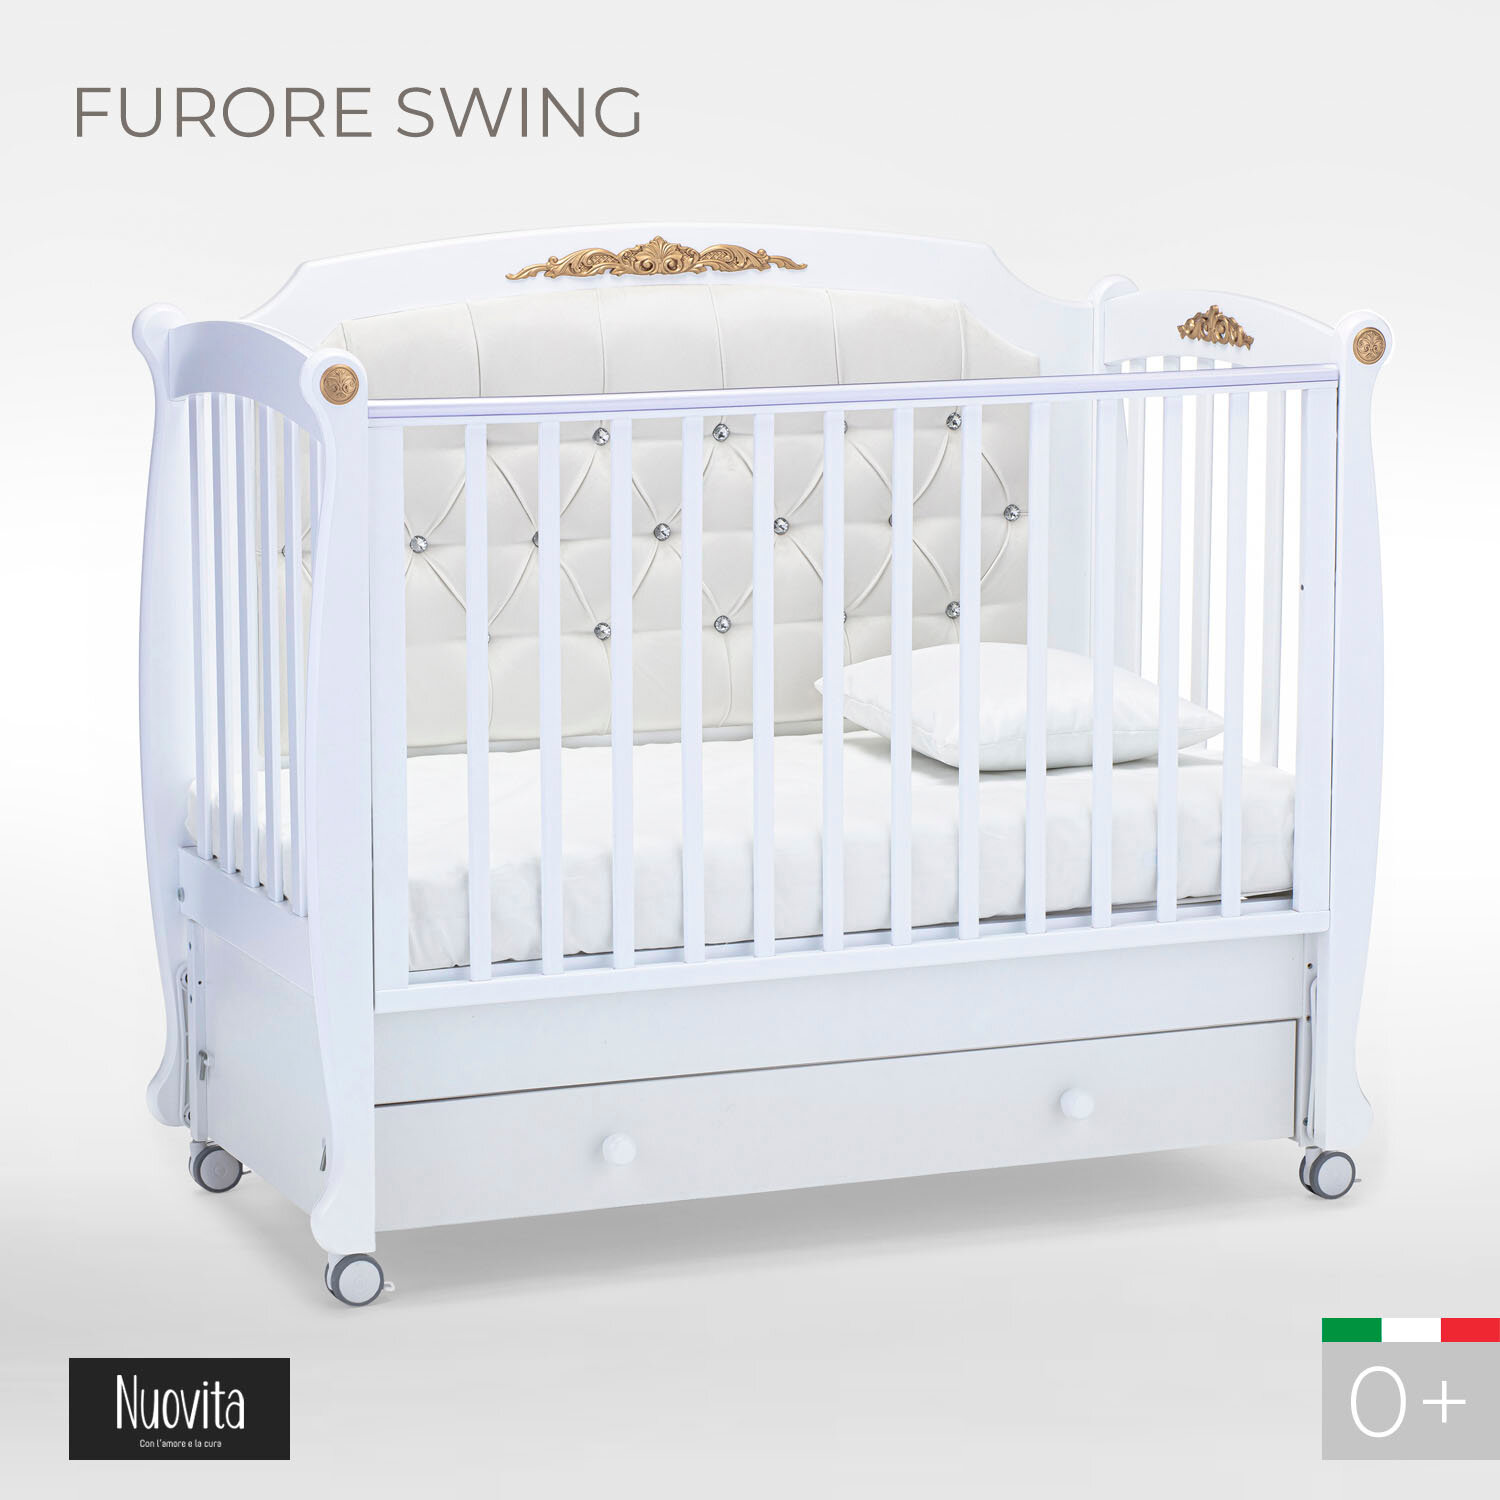 Детская кровать Nuovita Furore Swing продольный (цвета в ассорт.) - фото №2